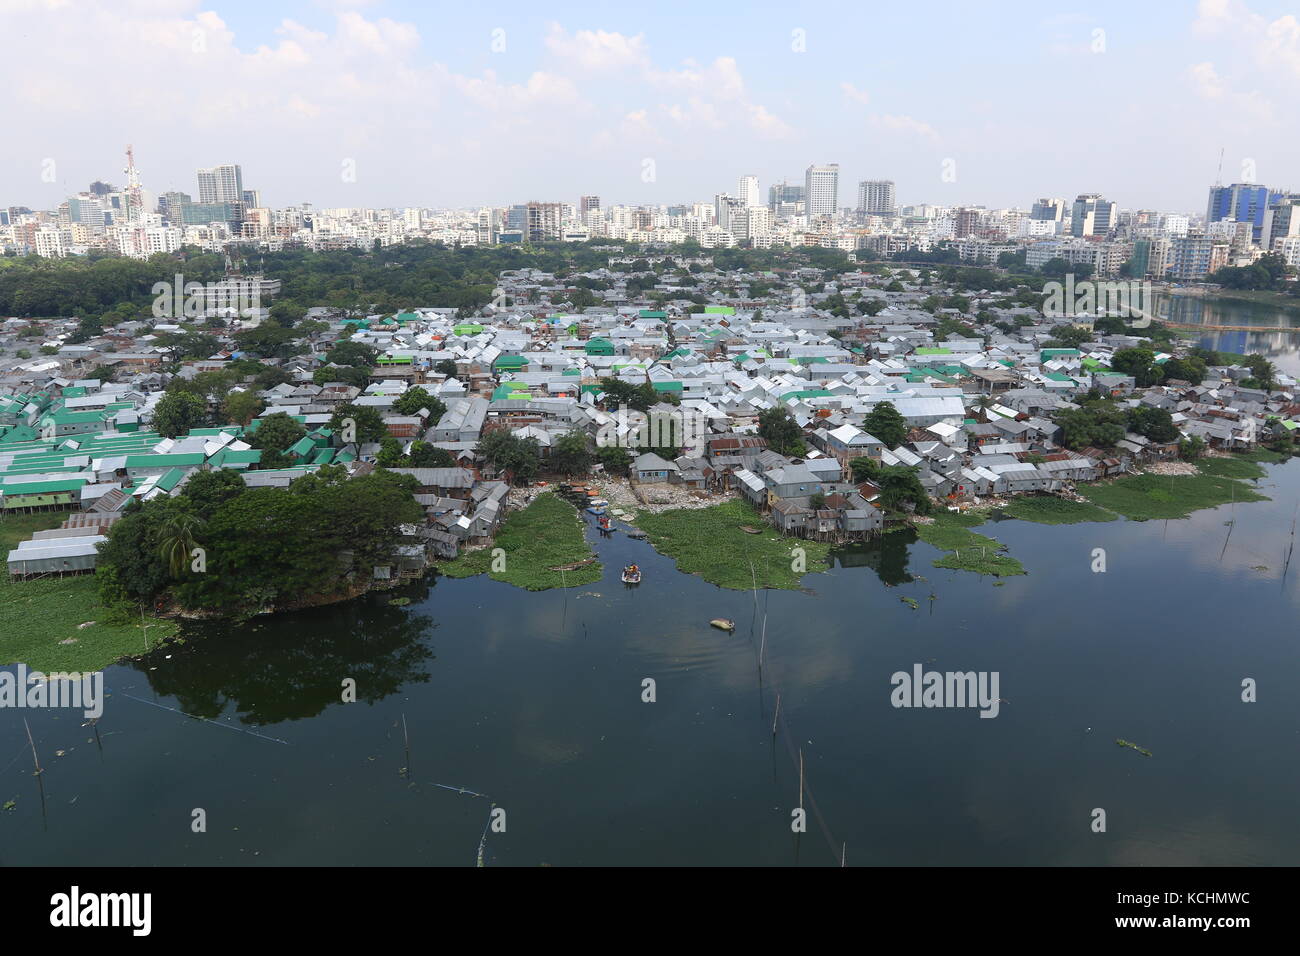 Eine Ansicht von Korail Slum, einem der größten Slums in Gulshan, Bangladesh, Dhaka, Bangladesh, 04. Okt 2017. Stockfoto